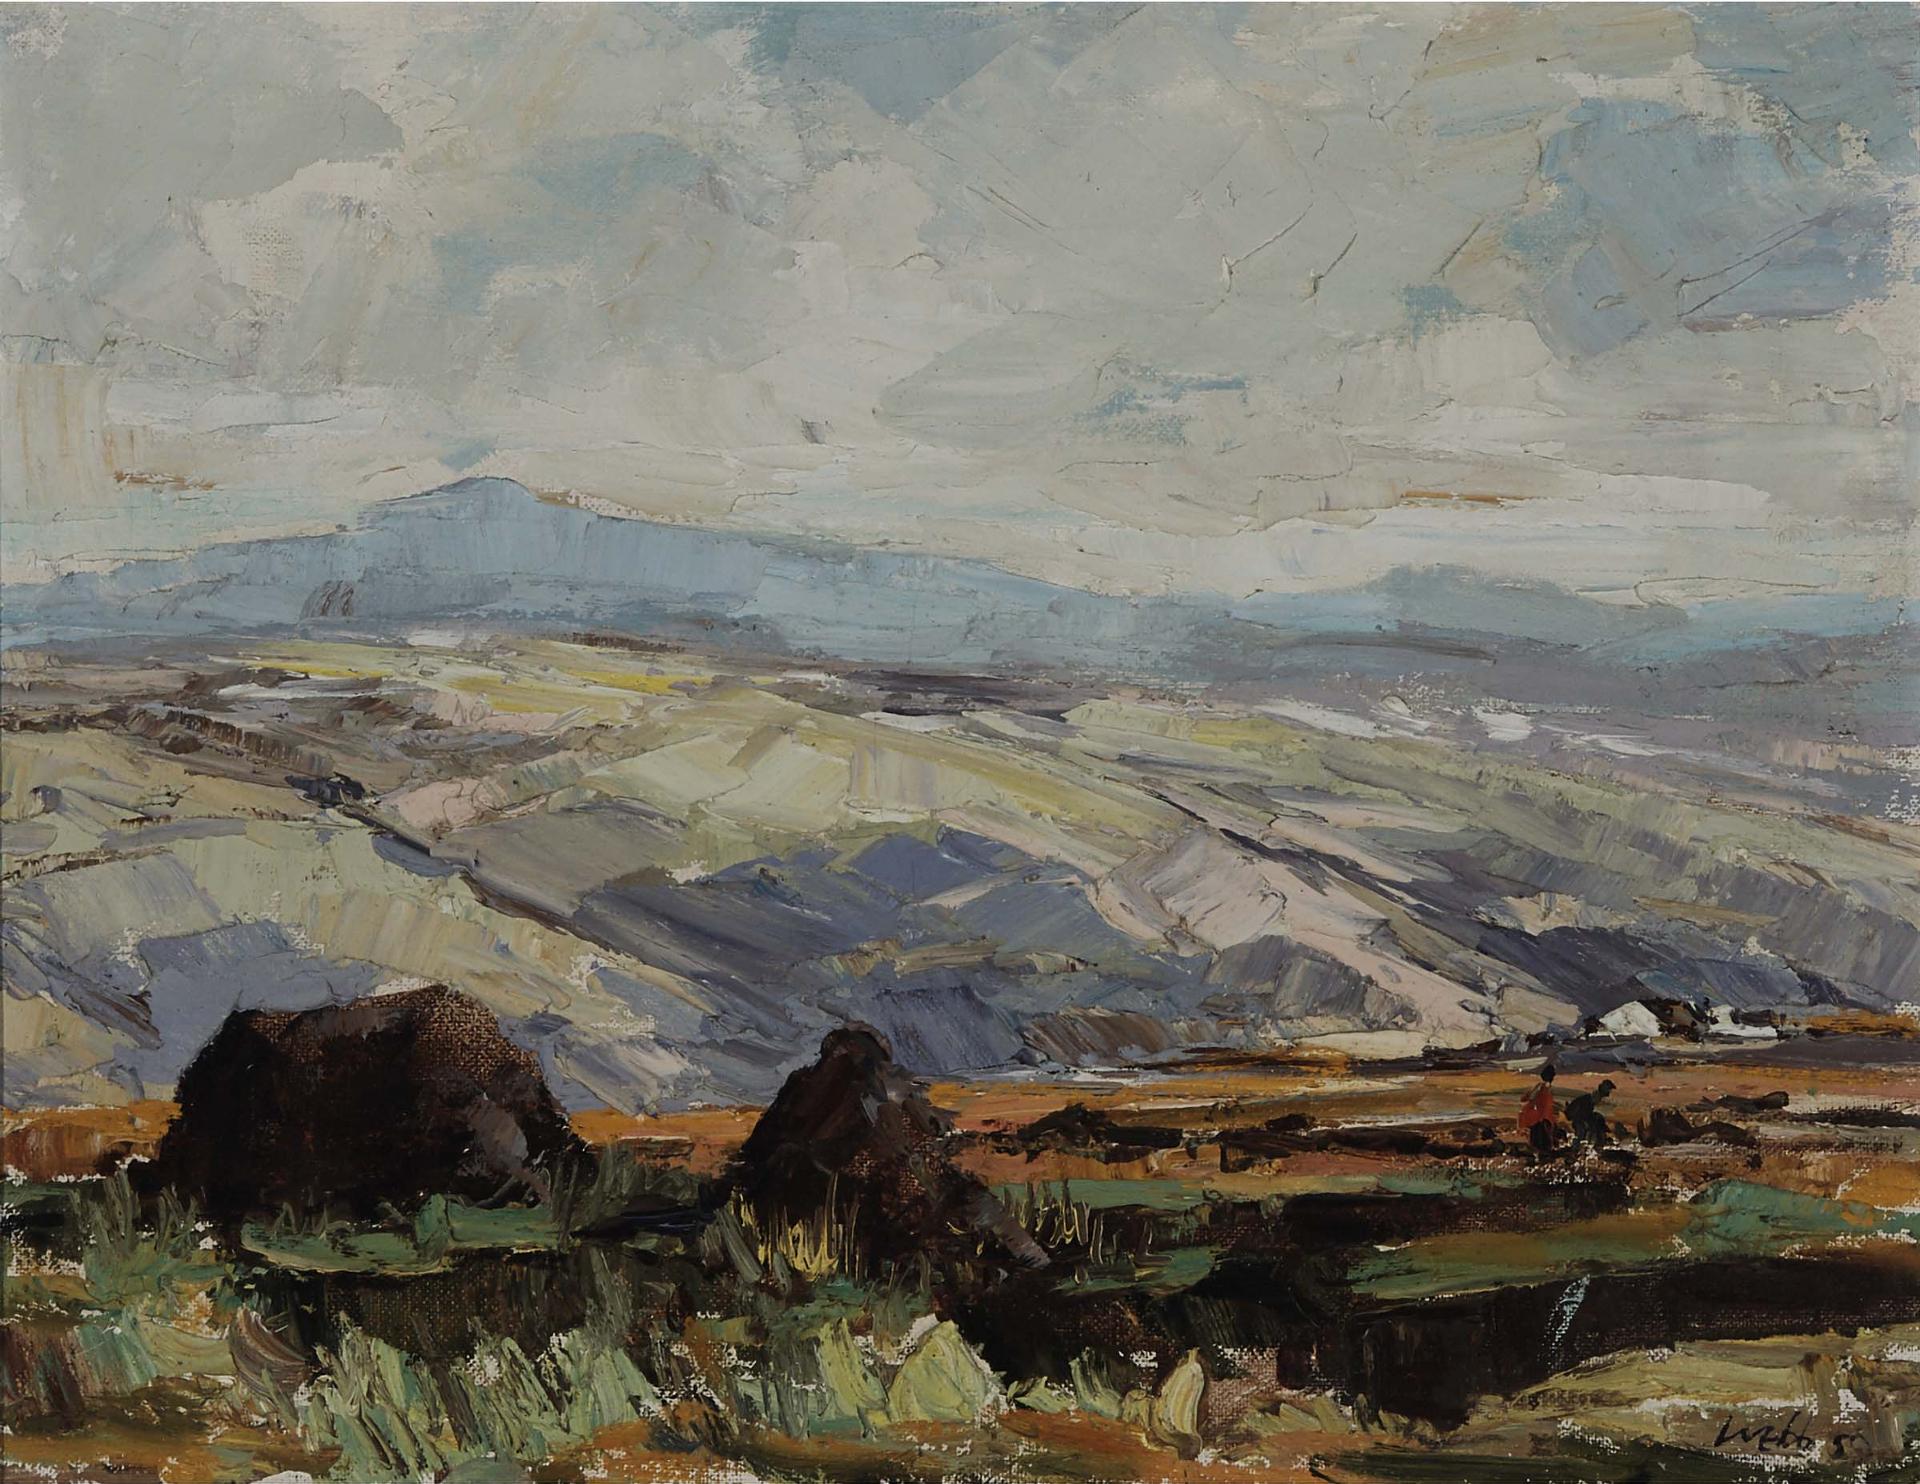 Kenneth A. Webb (1950) - Figures Working In The Fields In A Rocky Mountainous Landscape, 1950s